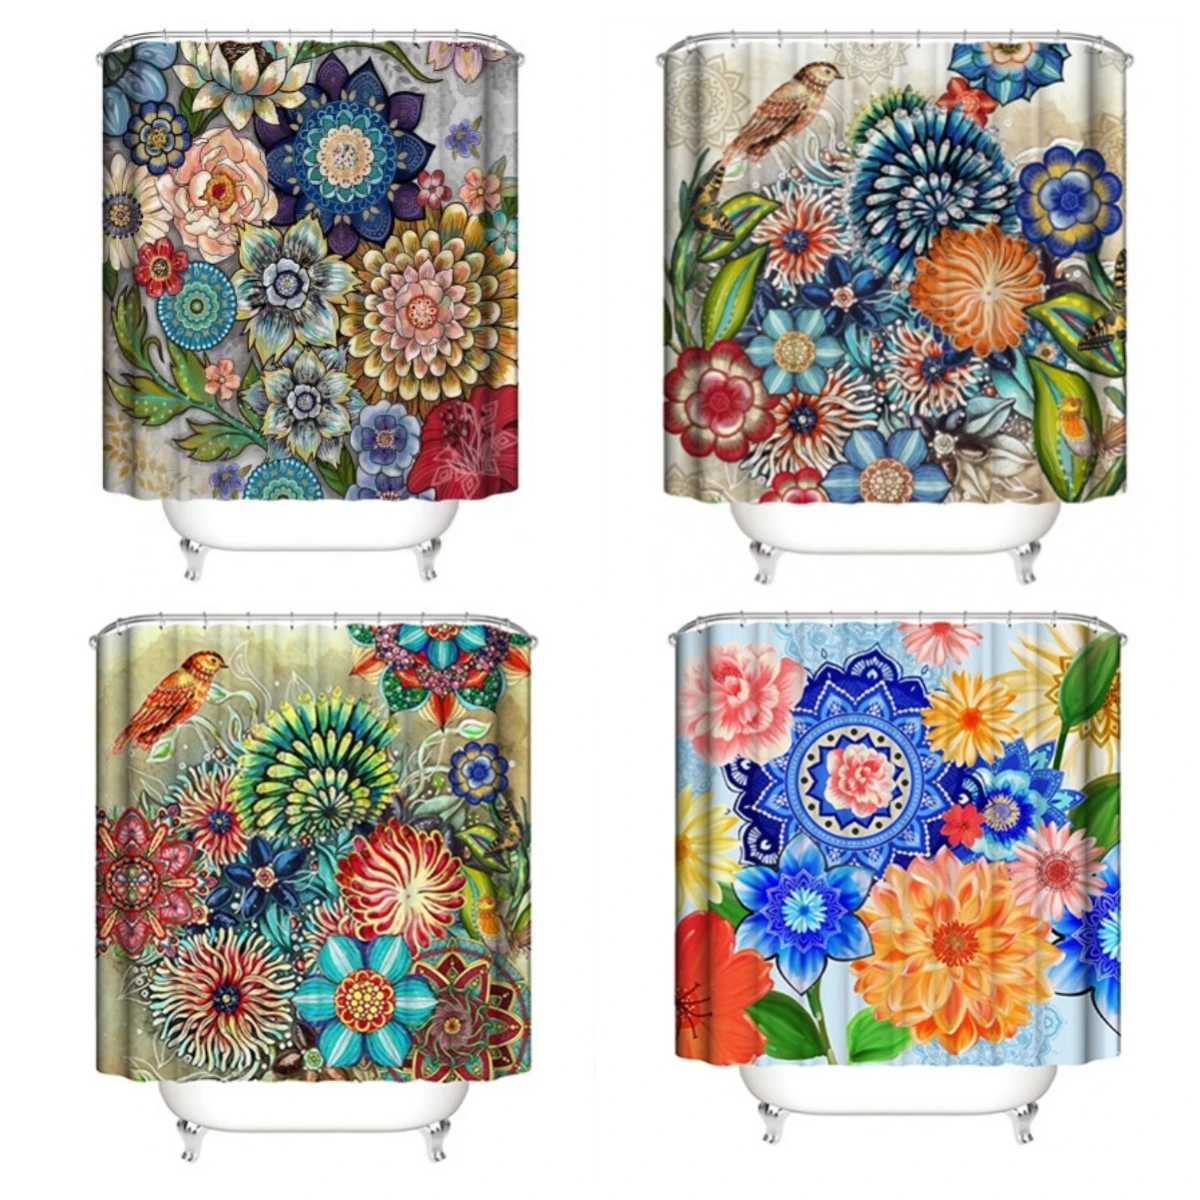 

Шторы для душа в богемном стиле, водонепроницаемые занавески для ванной в стиле бохо с принтом мандалы, цветов и растений, занавеска из полиэстера